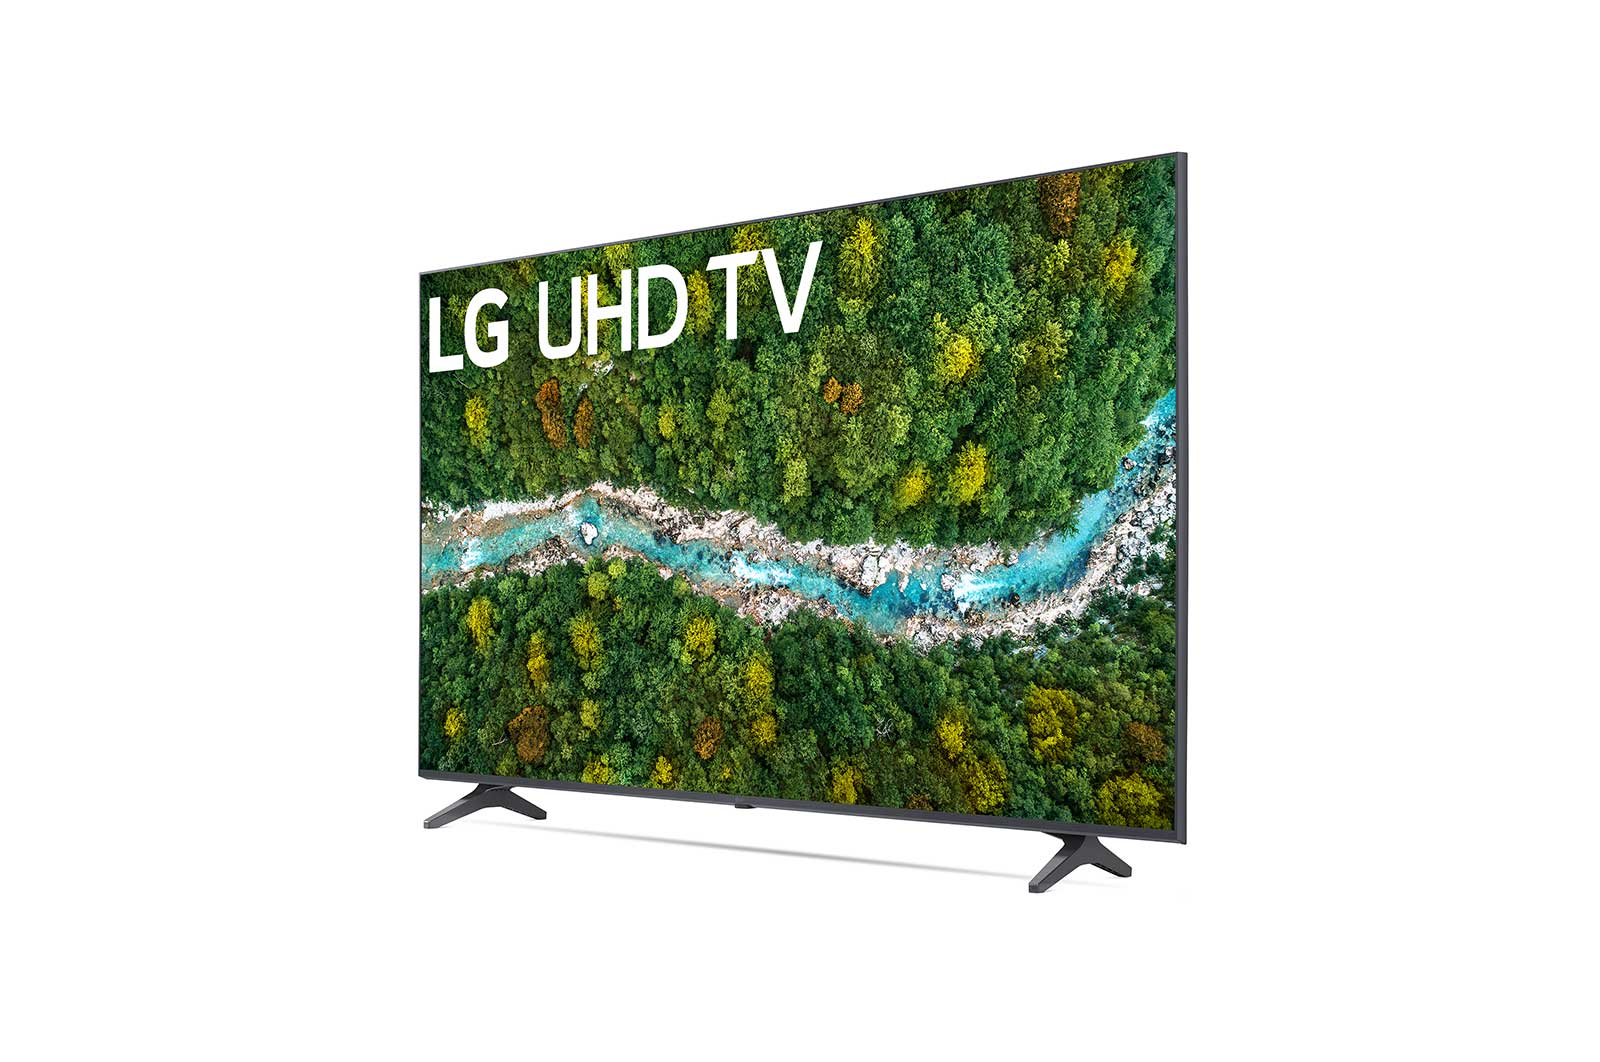 LG 50" Class 4K Smart UHD TV w/AI ThinQ